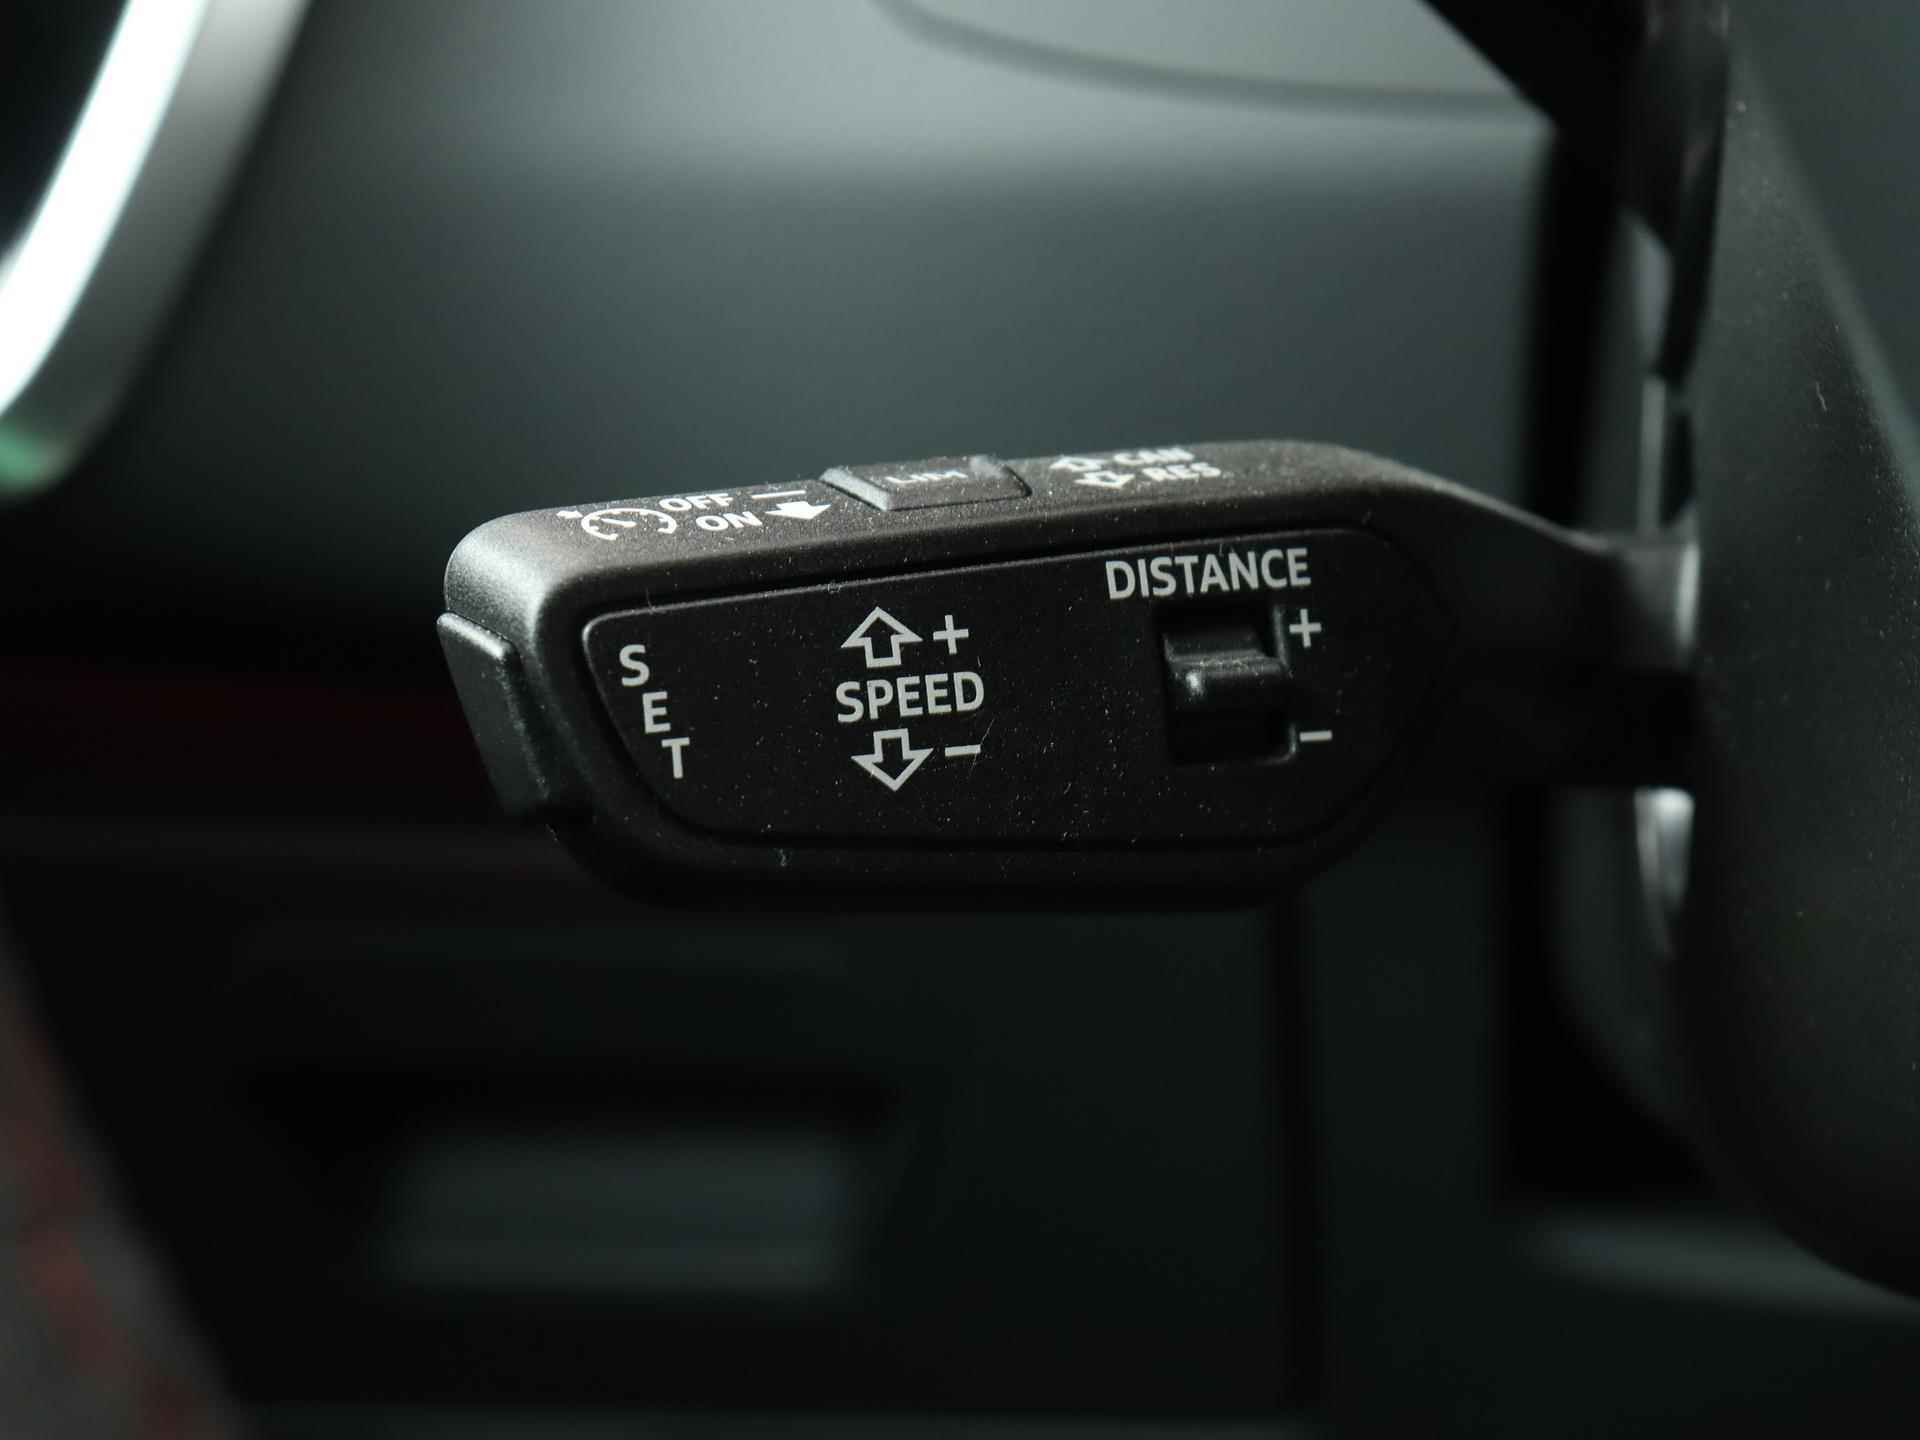 Audi RS 6 Avant TFSI quattro 600 PK | Head-up display | Bang & Olufsen Soundsystem | 22 inch lm velgen | RS Dynamic Pakket Plus | RS Design pakket Rood |Optiekpakket Zwart Plus | Panorama dak | RS Sportuitlaat | Keramische remschijven Rood | RS Sportonderstel Plus | Servosluiting deuren | Nu € 36.129,- ACTIEKORTING! | DIRECT LEVERBAAR! | - 16/35